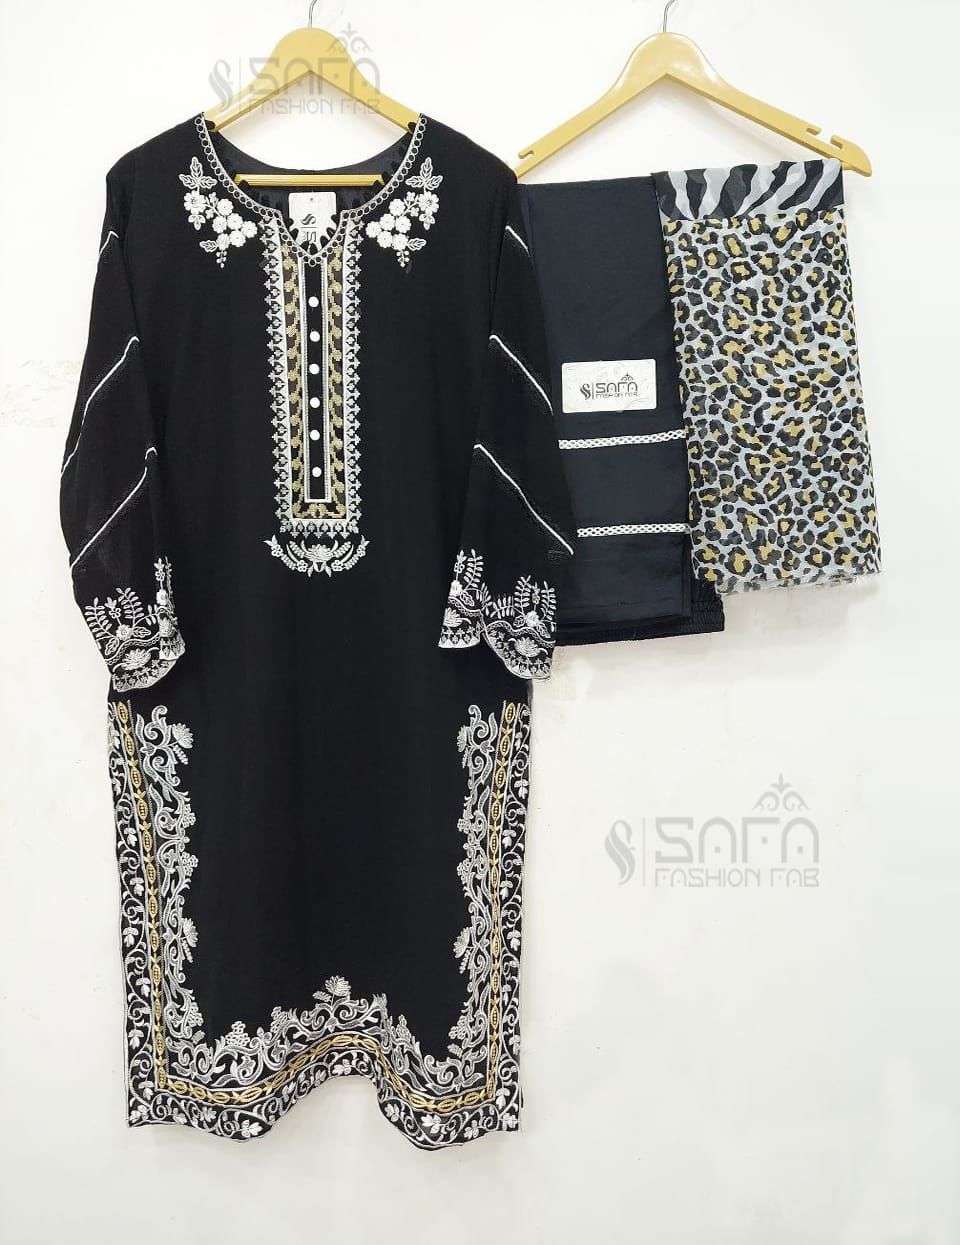 safa fashion 1059 colour series georgette stich salwar kameez online wholesale dealer surat 